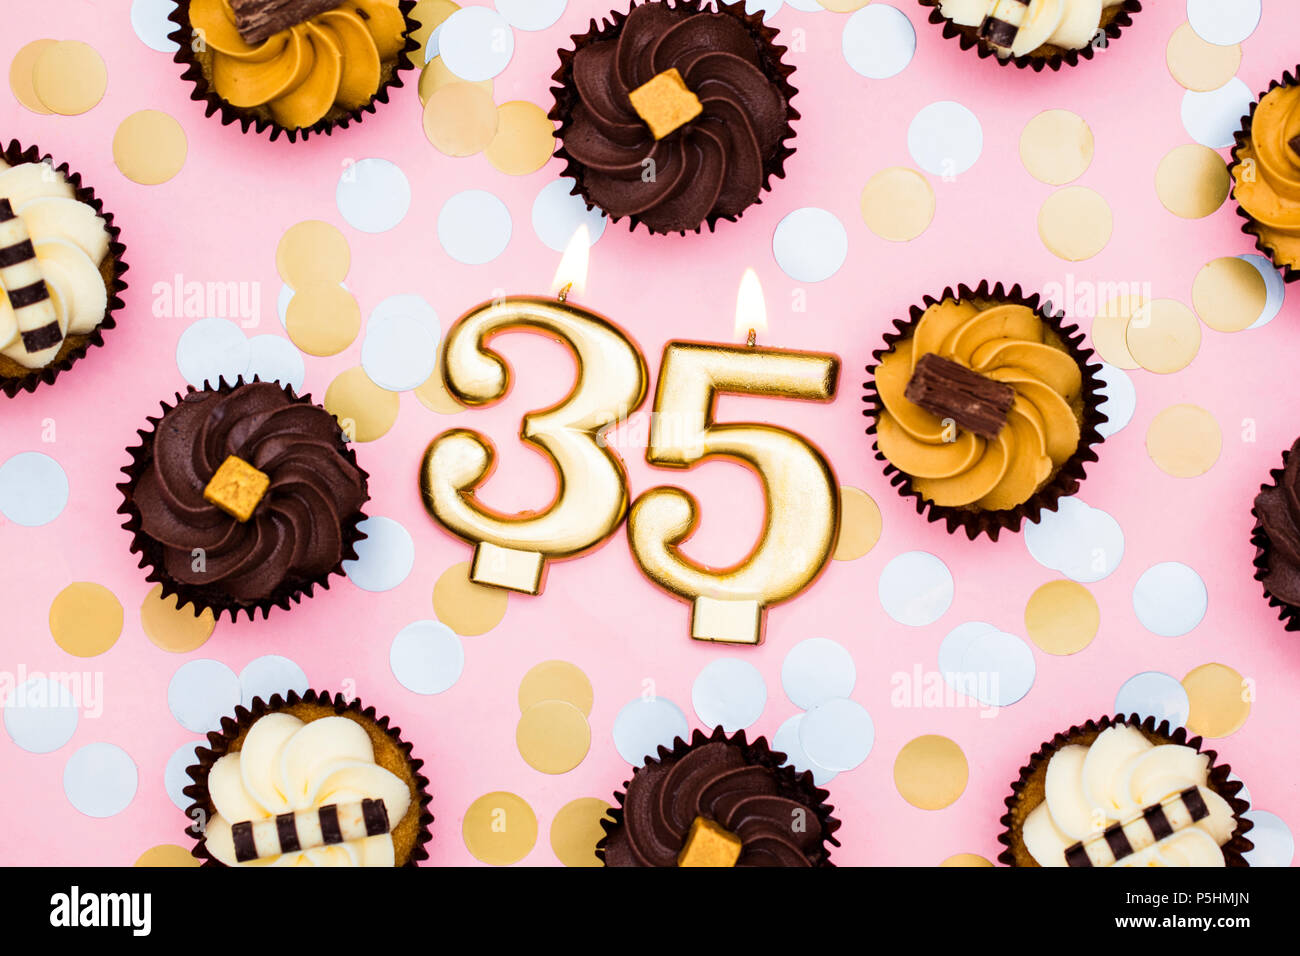 Nummer 35 gold Kerze mit Cupcakes gegen ein Pastell rosa Hintergrund Stockfoto